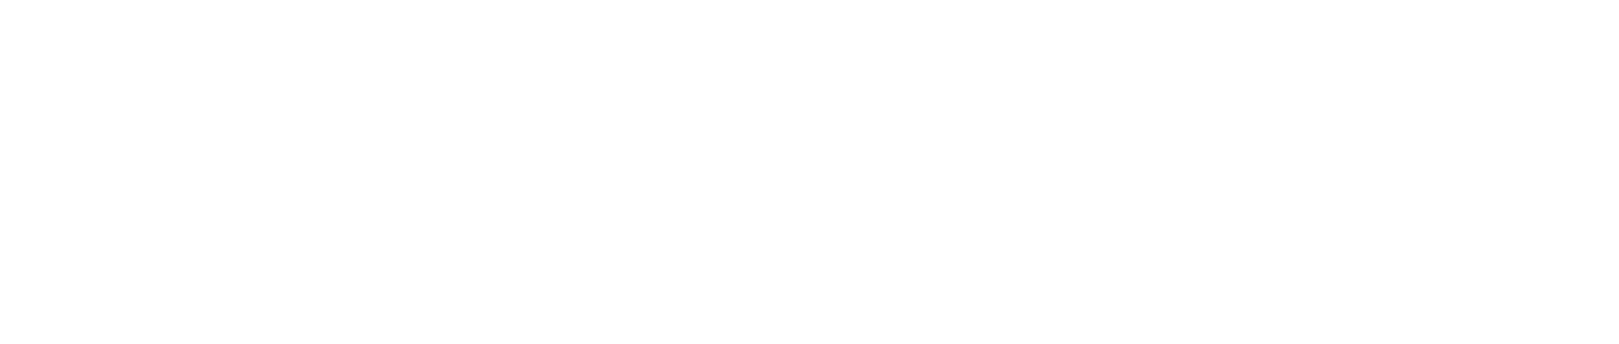 Moody's logo grand pour les fonds sombres (PNG transparent)